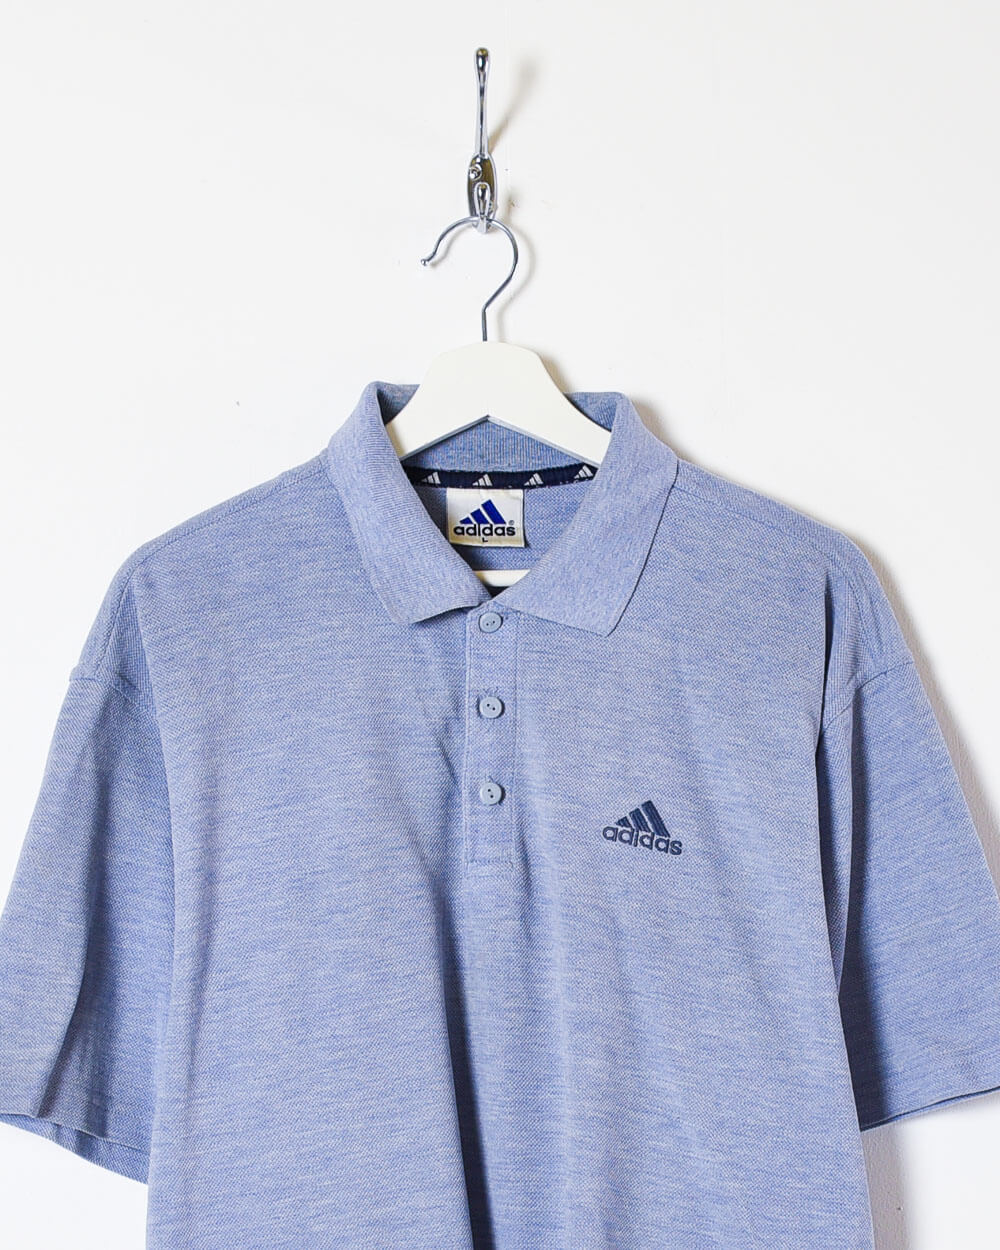 Blue Adidas Polo Shirt - Large